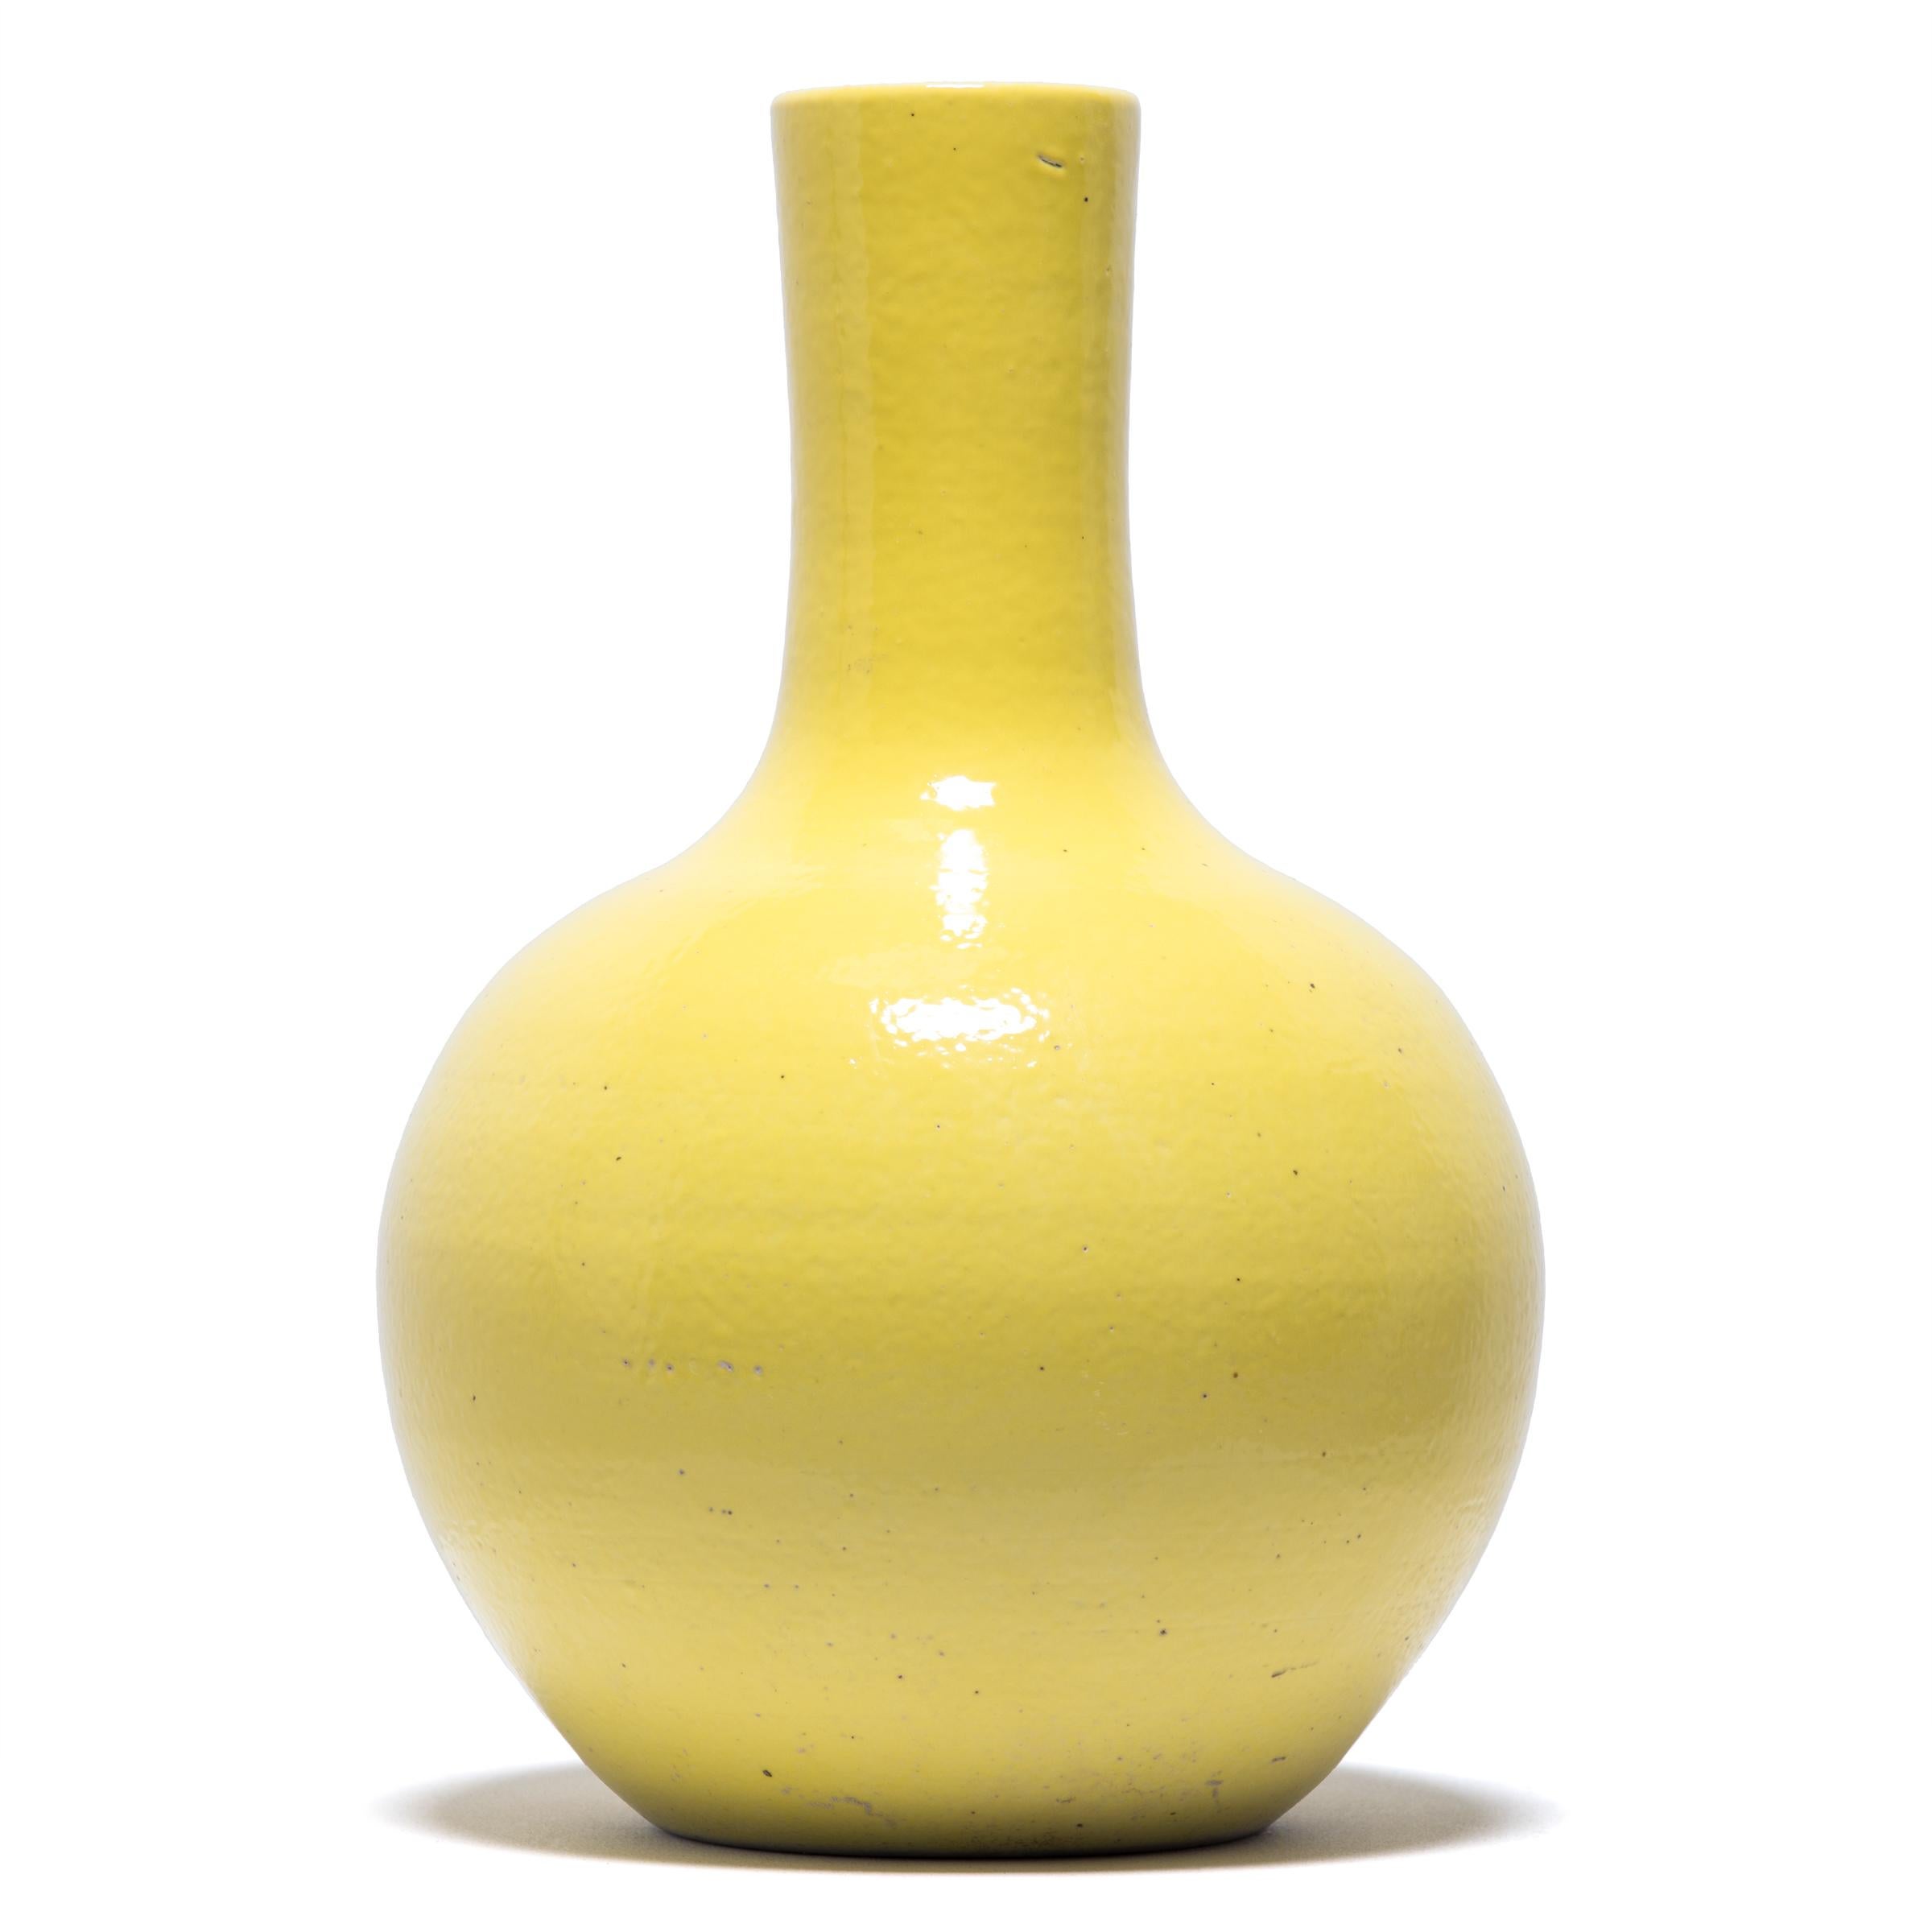 S'inspirant d'une longue tradition chinoise de céramiques monochromes, ce grand vase à col de cygne est recouvert d'une vibrante glaçure jaune citron. Le vase se caractérise par un corps arrondi et globulaire et un col cylindrique étroit, une forme